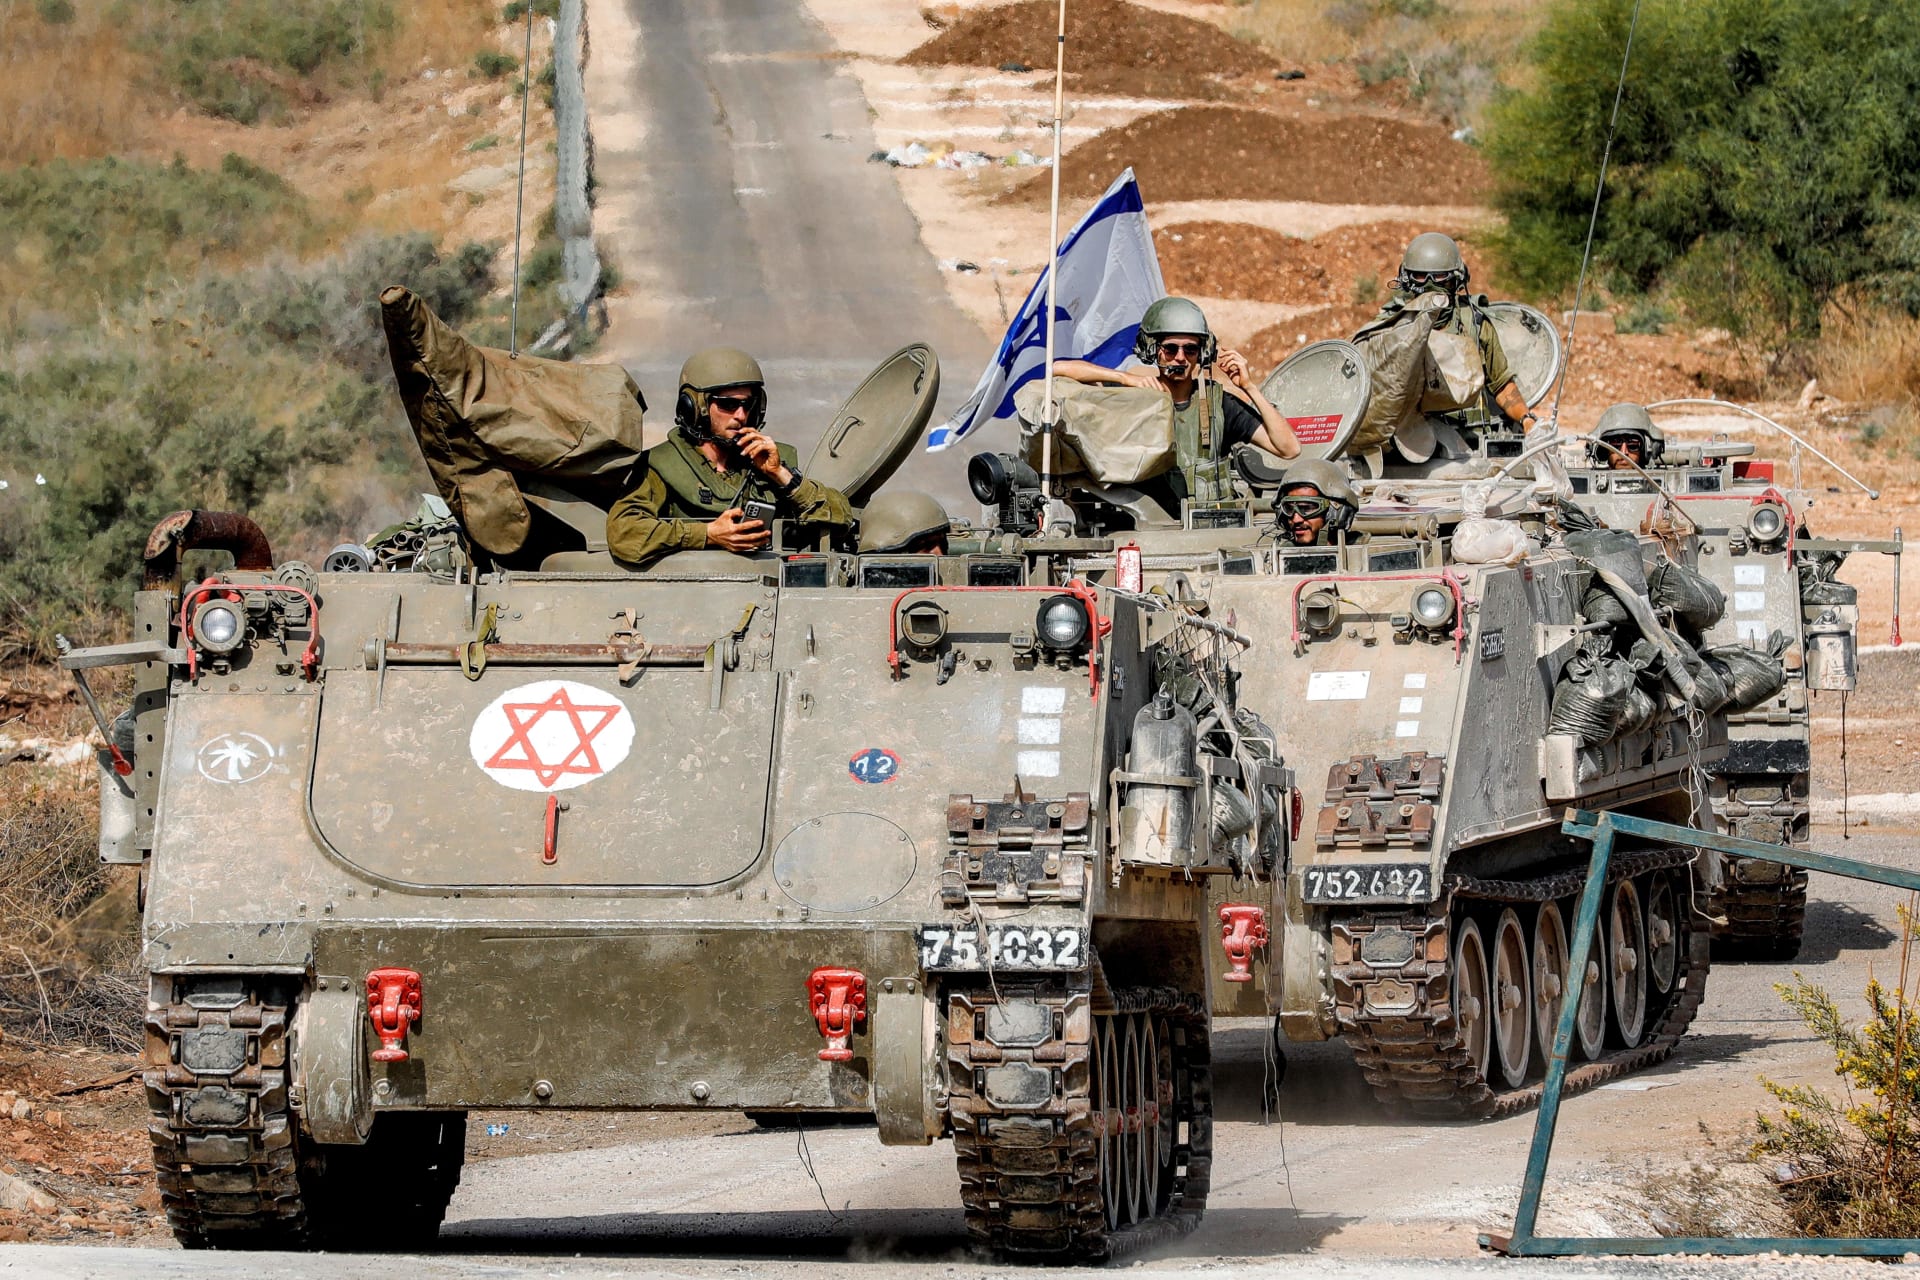 الجيش الإسرائيلي يعلن الموافقة على "خطط العمليات" لهجوم محتمل في لبنان